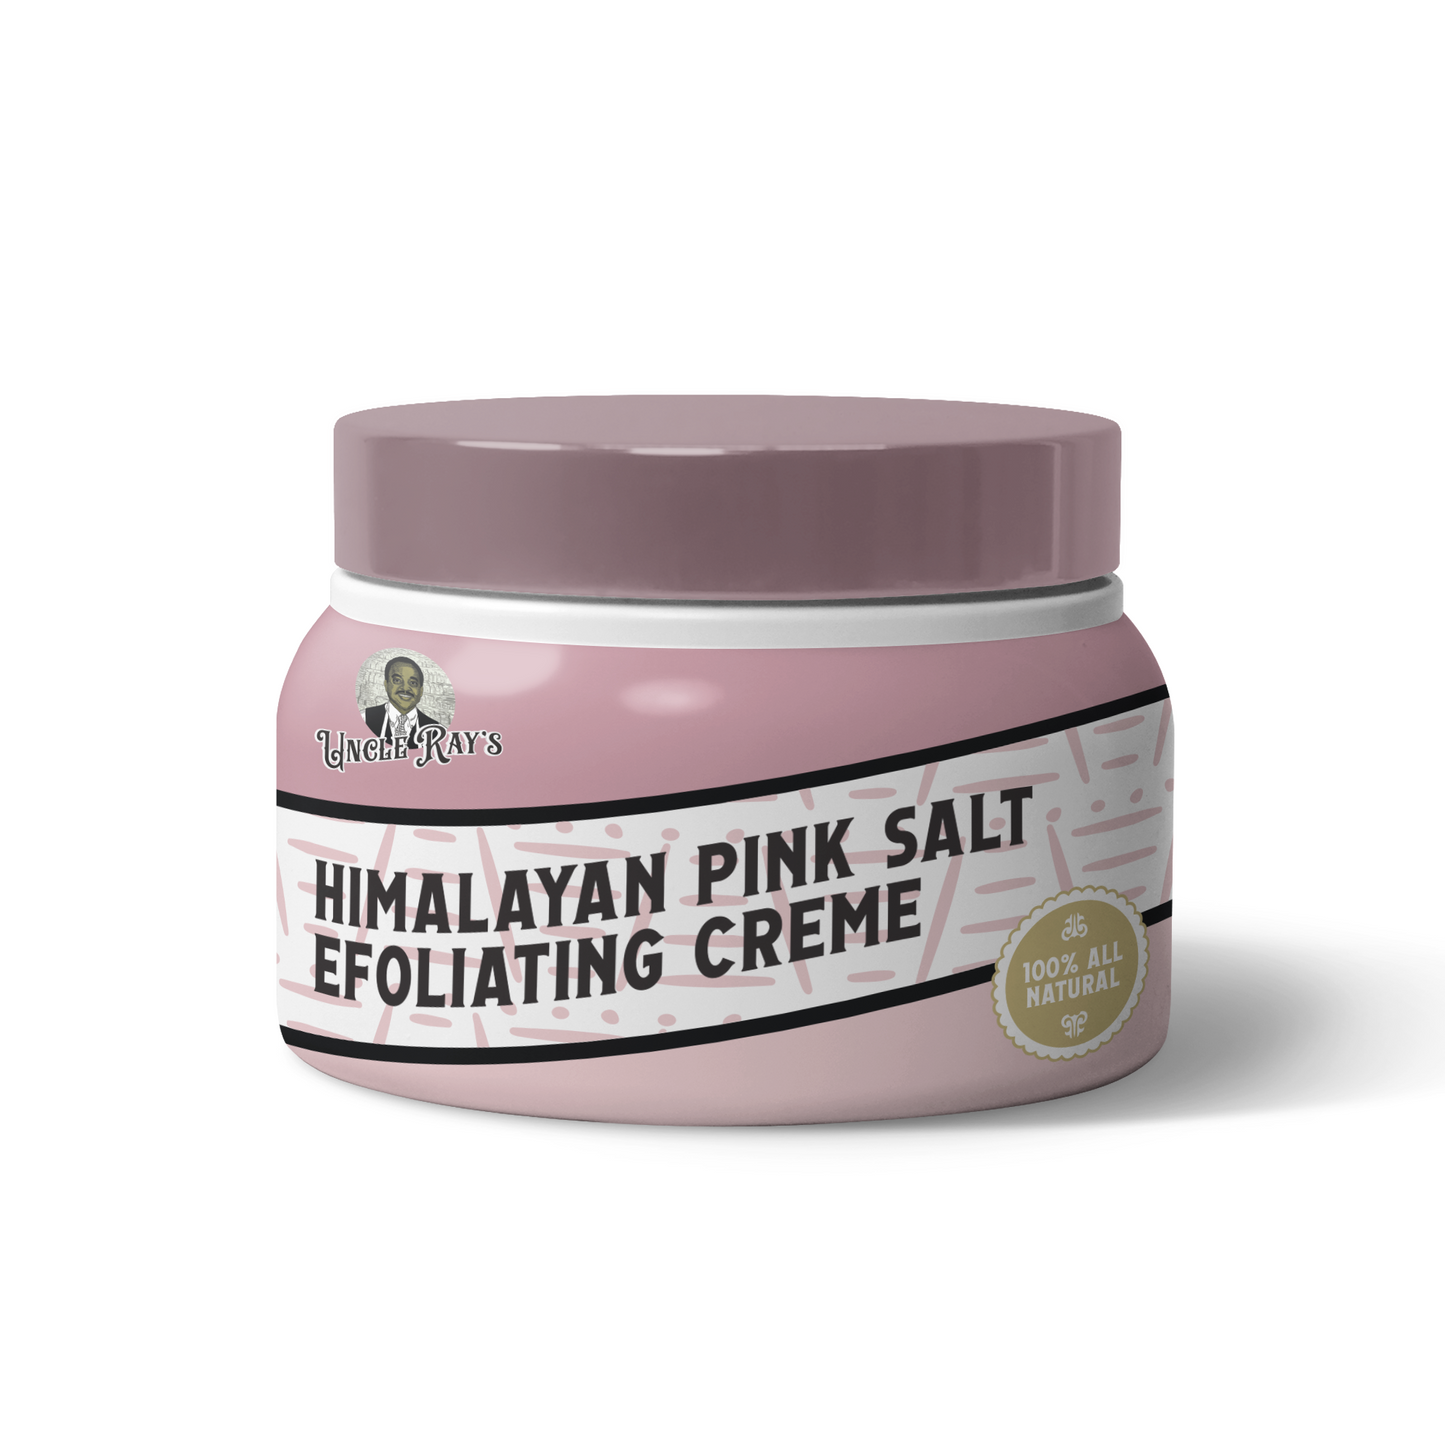 Himalayan Pink Salt Exfoliating Creme